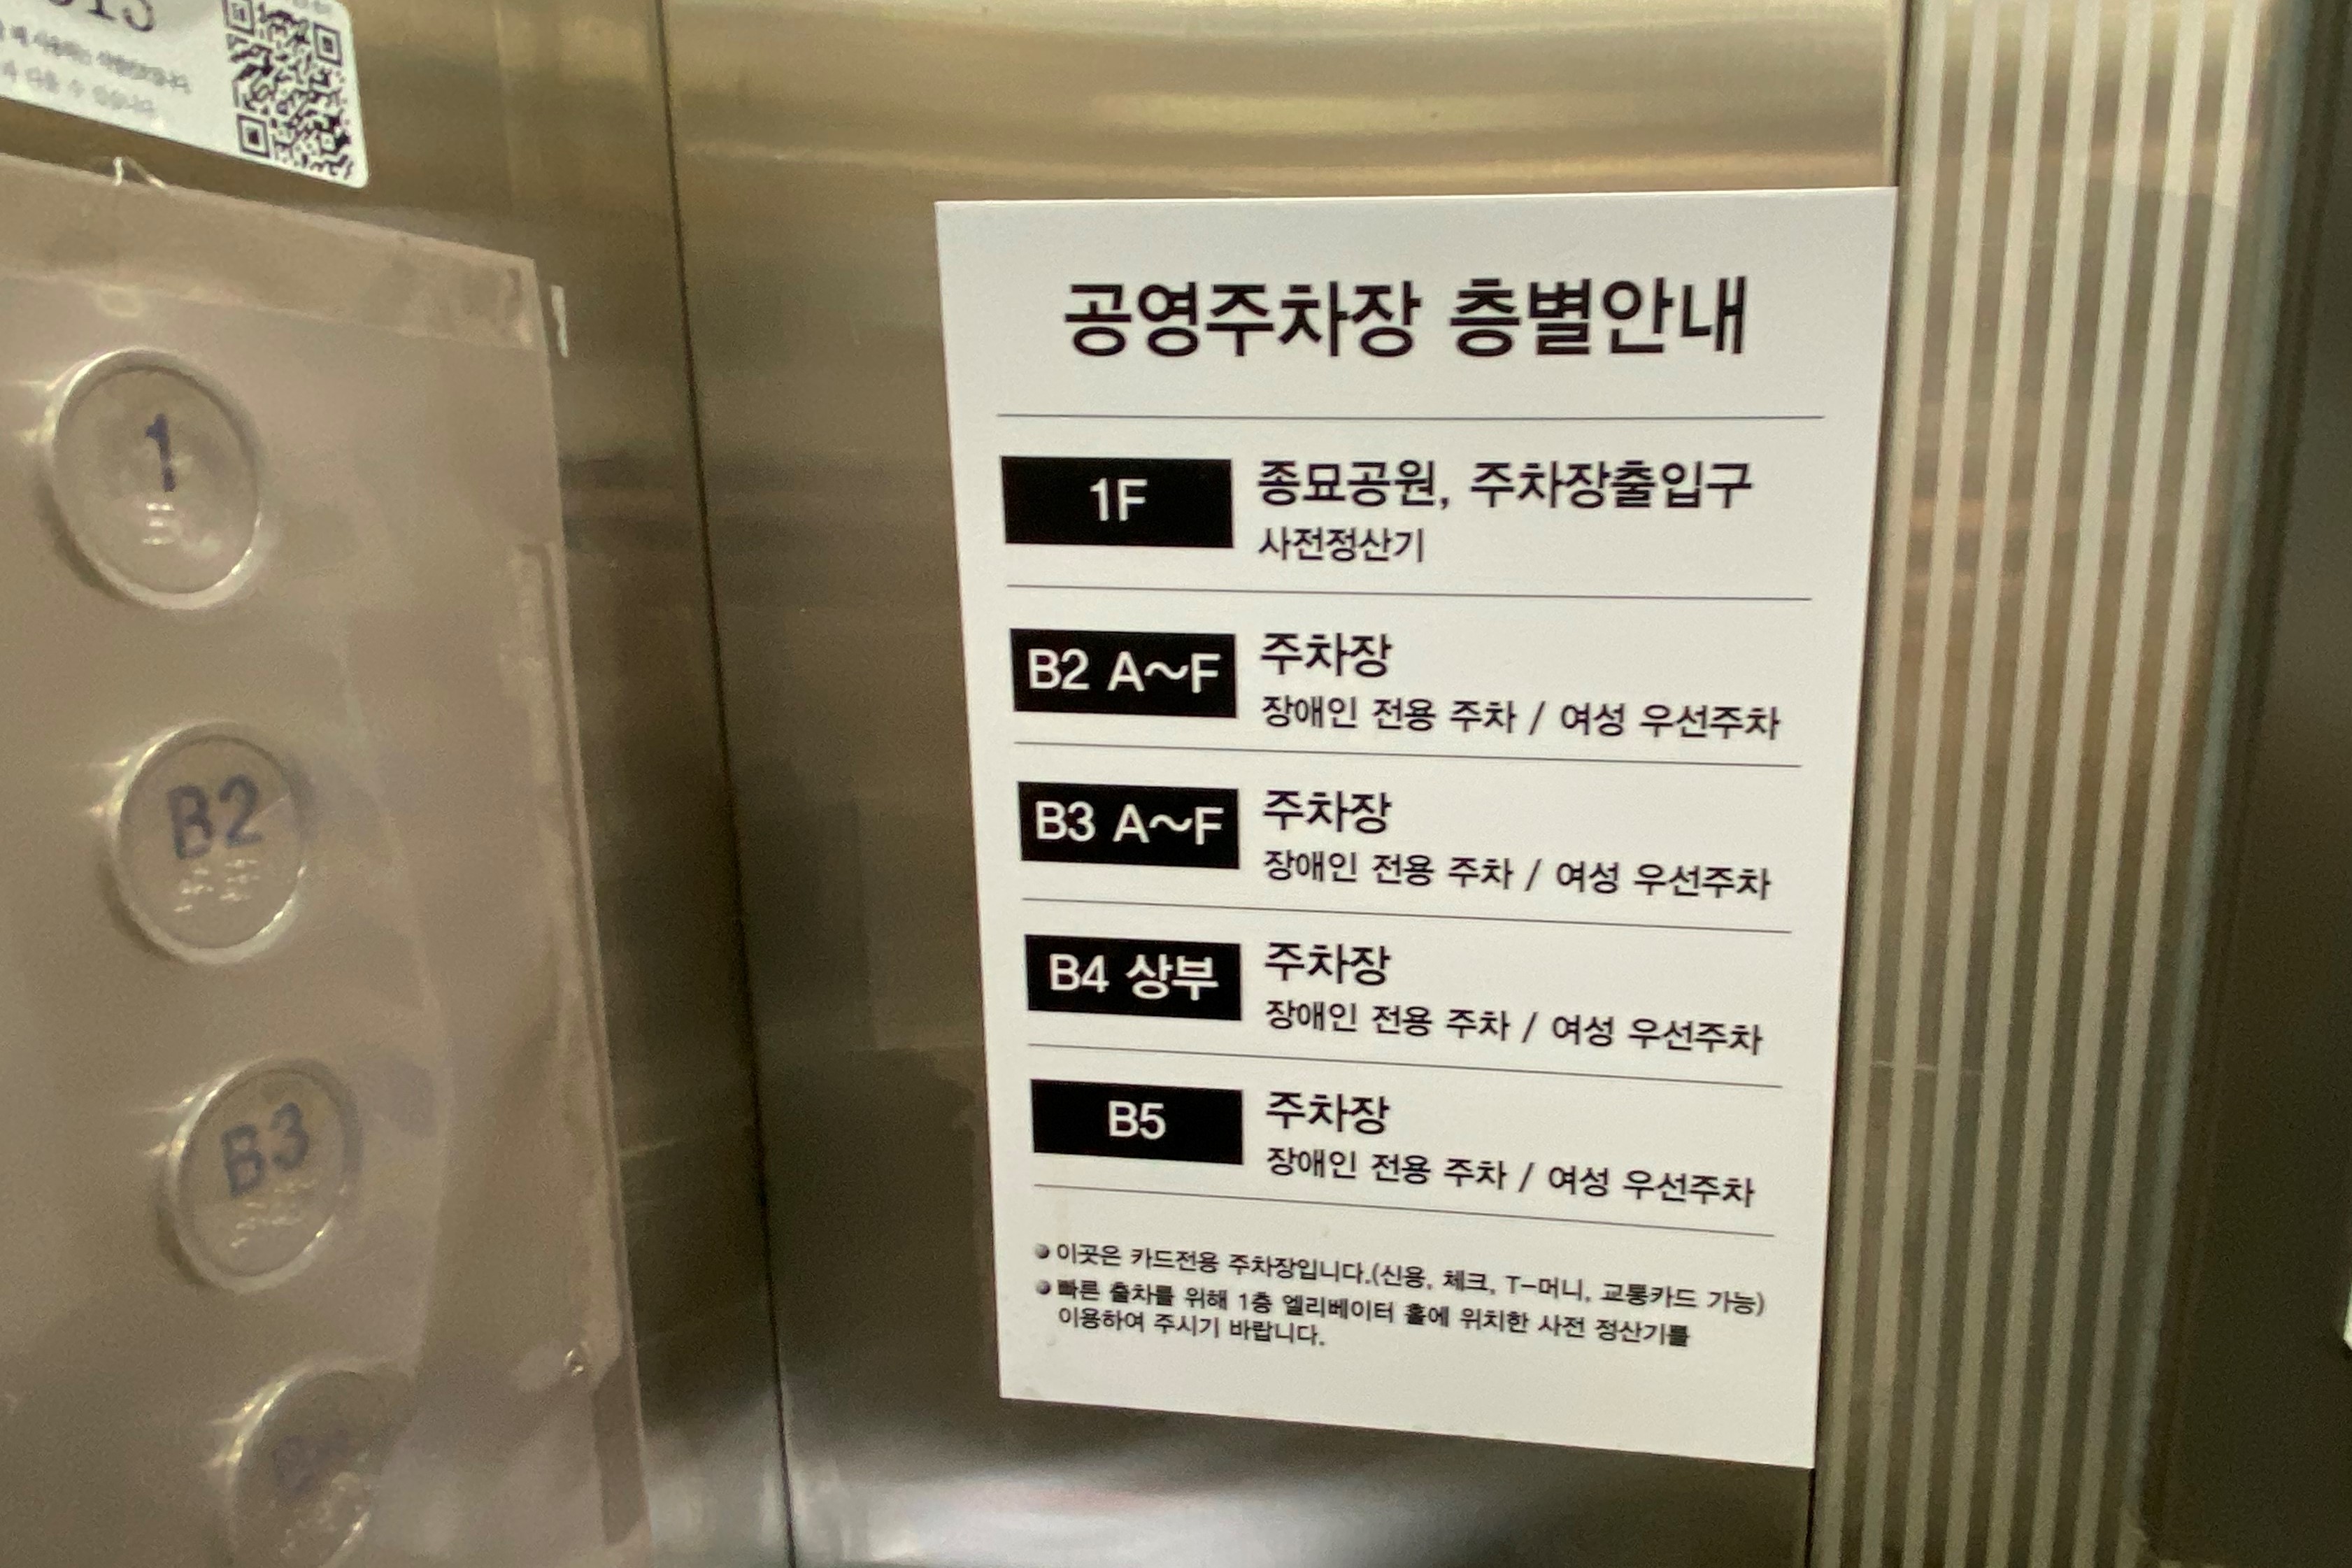 엘리베이터/장애인주차장0 : 종묘 엘리베이터 내부에 설치된 층별안내판과 점자버튼